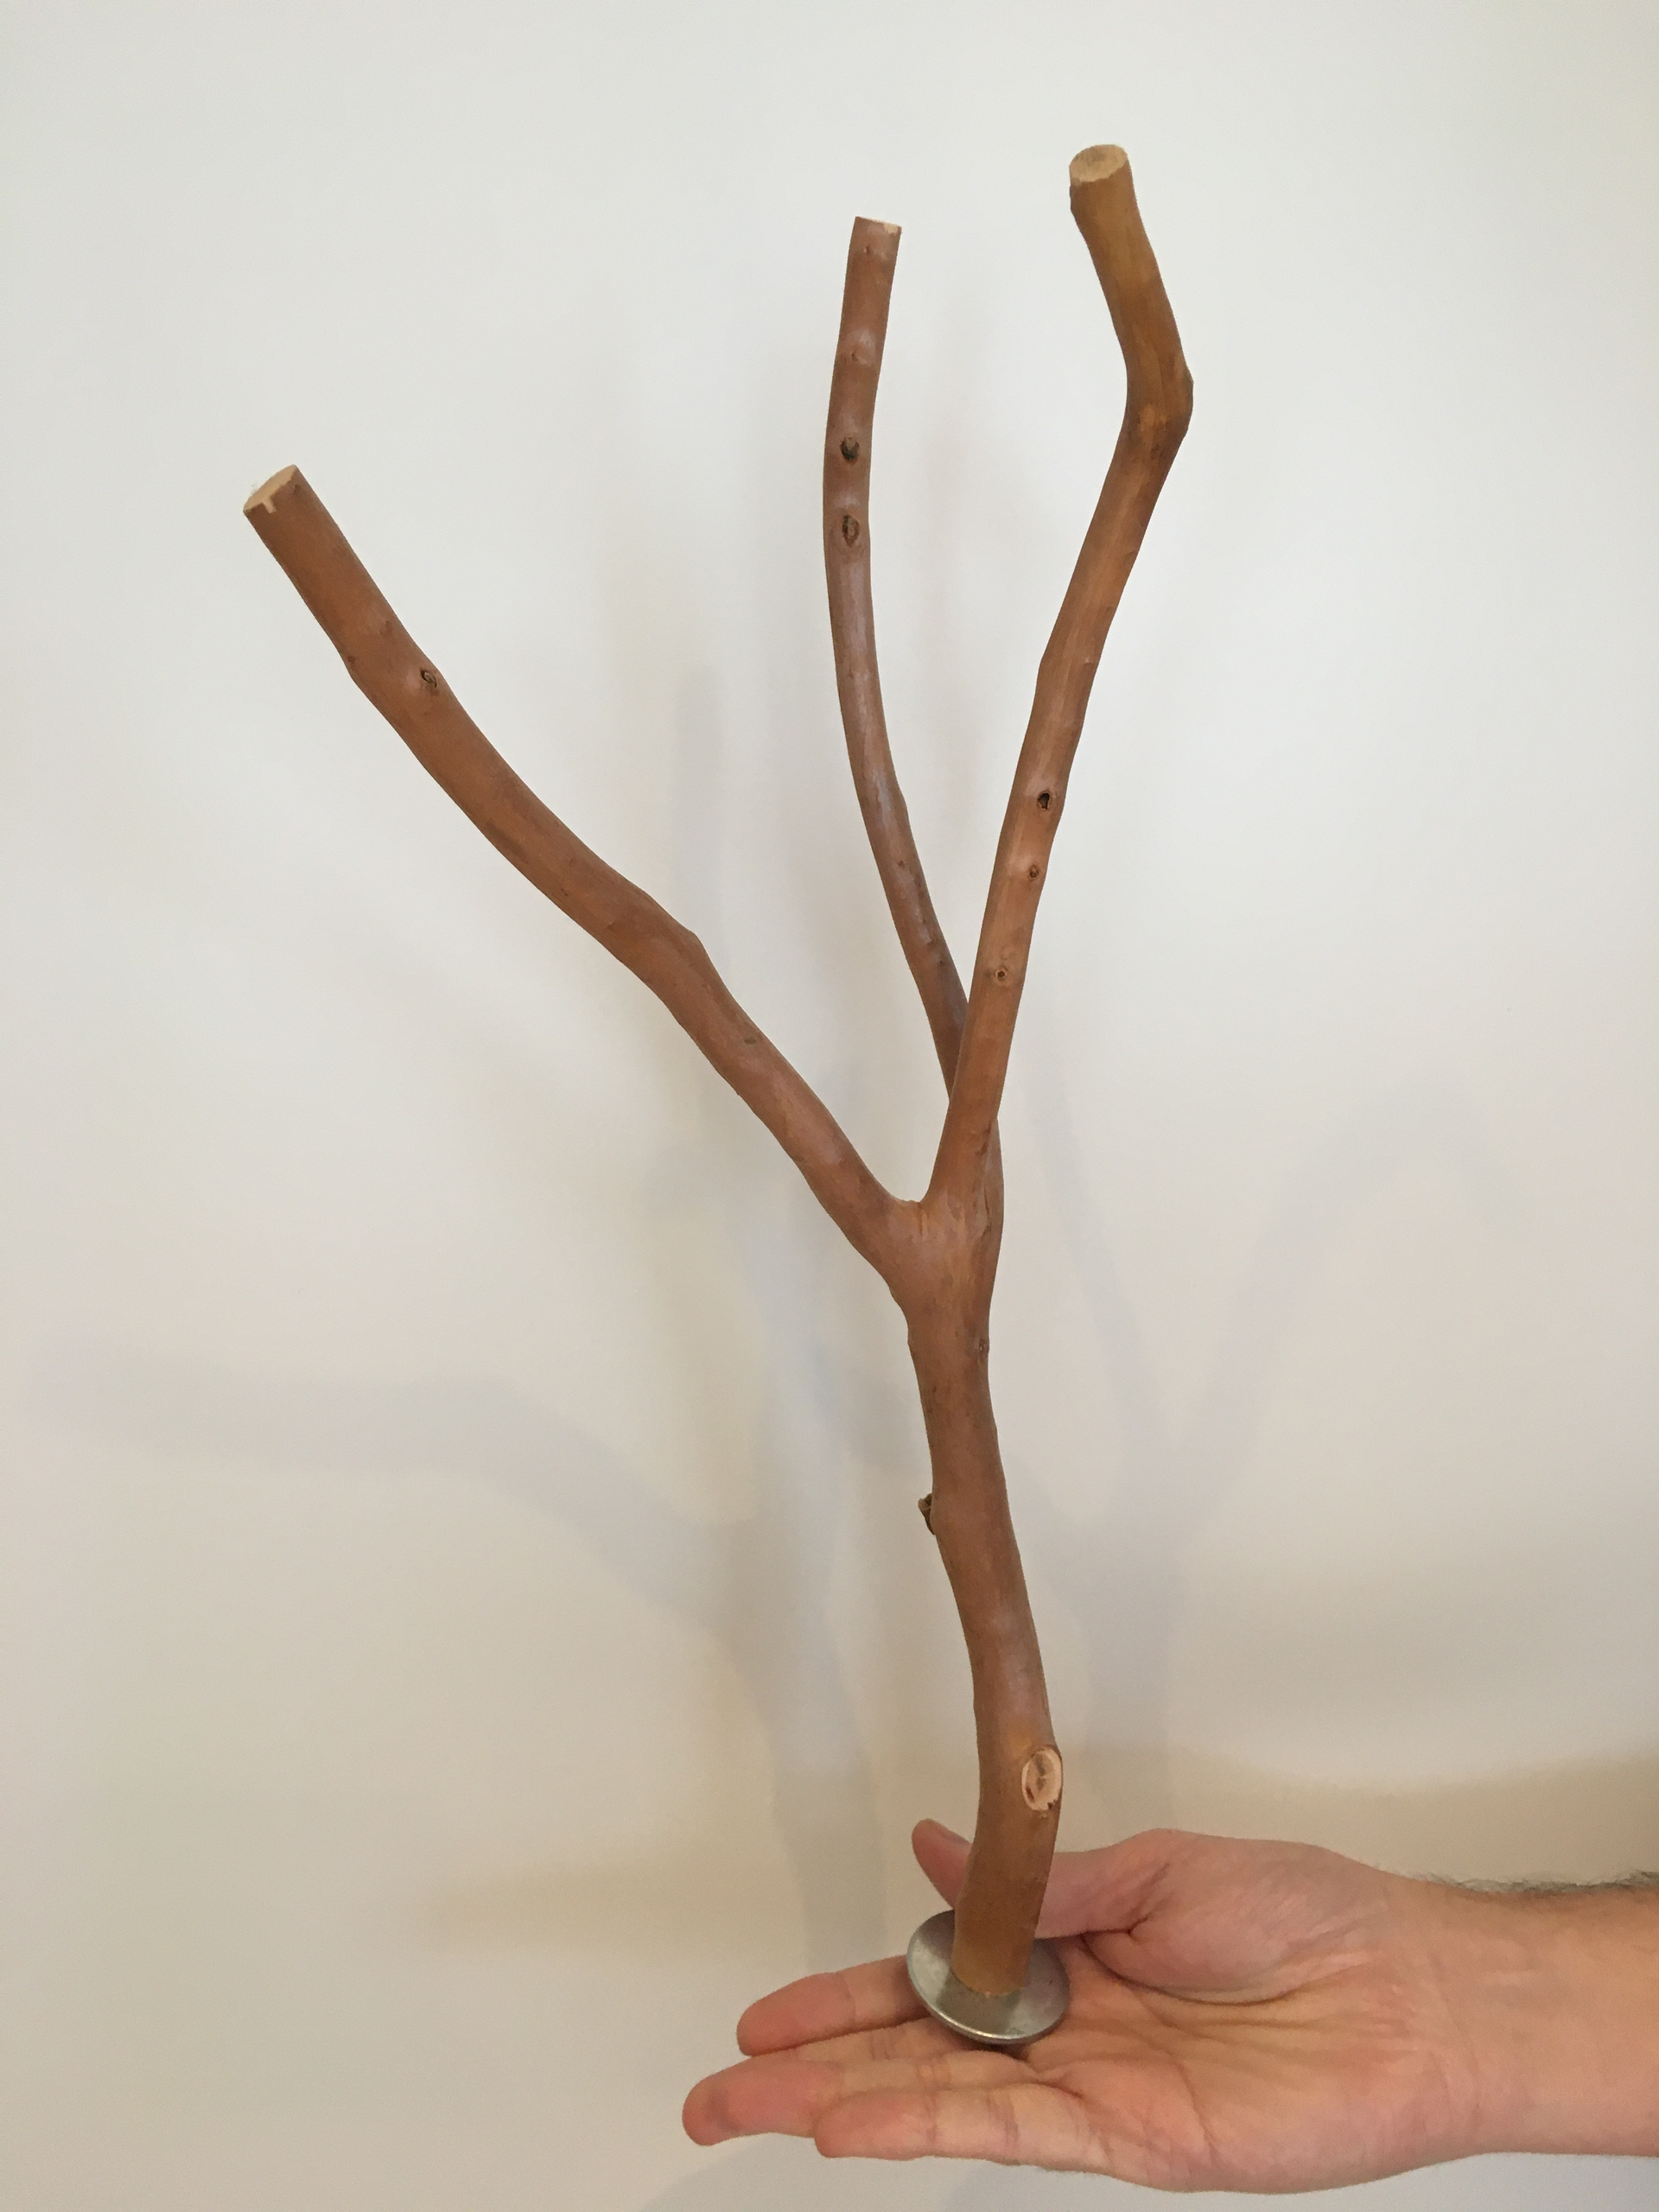 40 cm by 4 cm multi branch perch viewed vertically